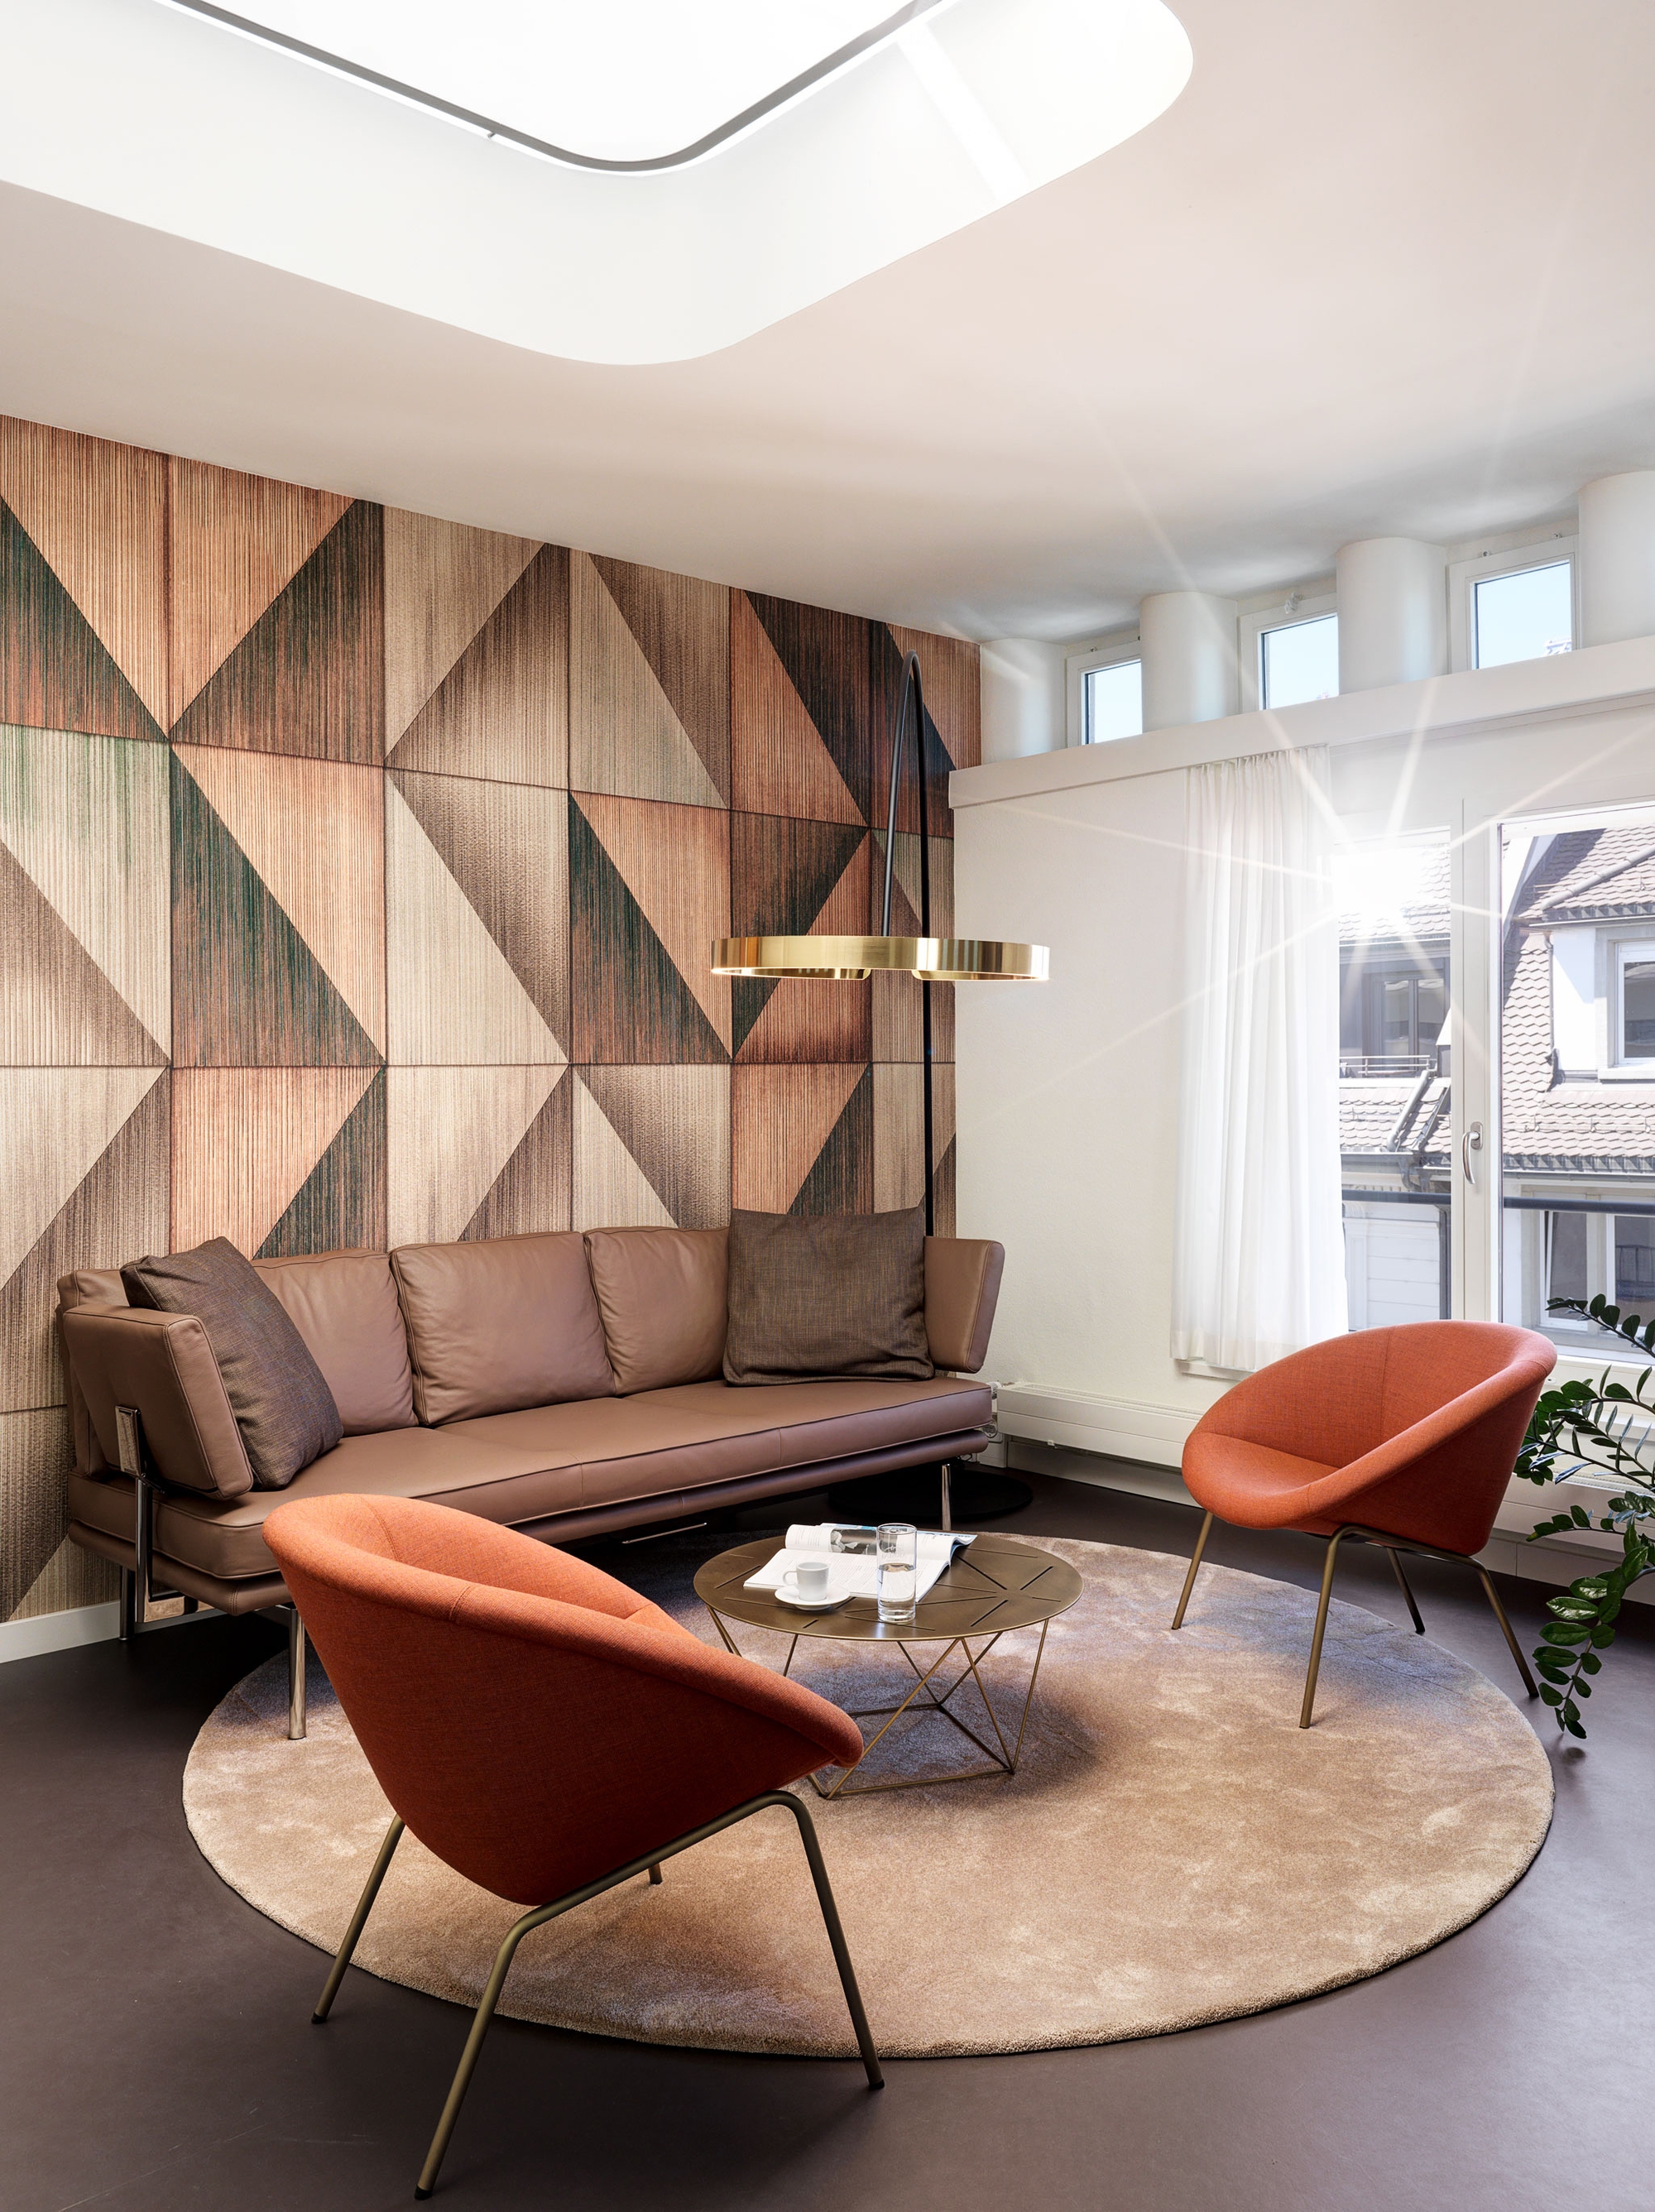 图片[2]|Kongresshaus办公室–苏黎世|ART-Arrakis | 建筑室内设计的创新与灵感